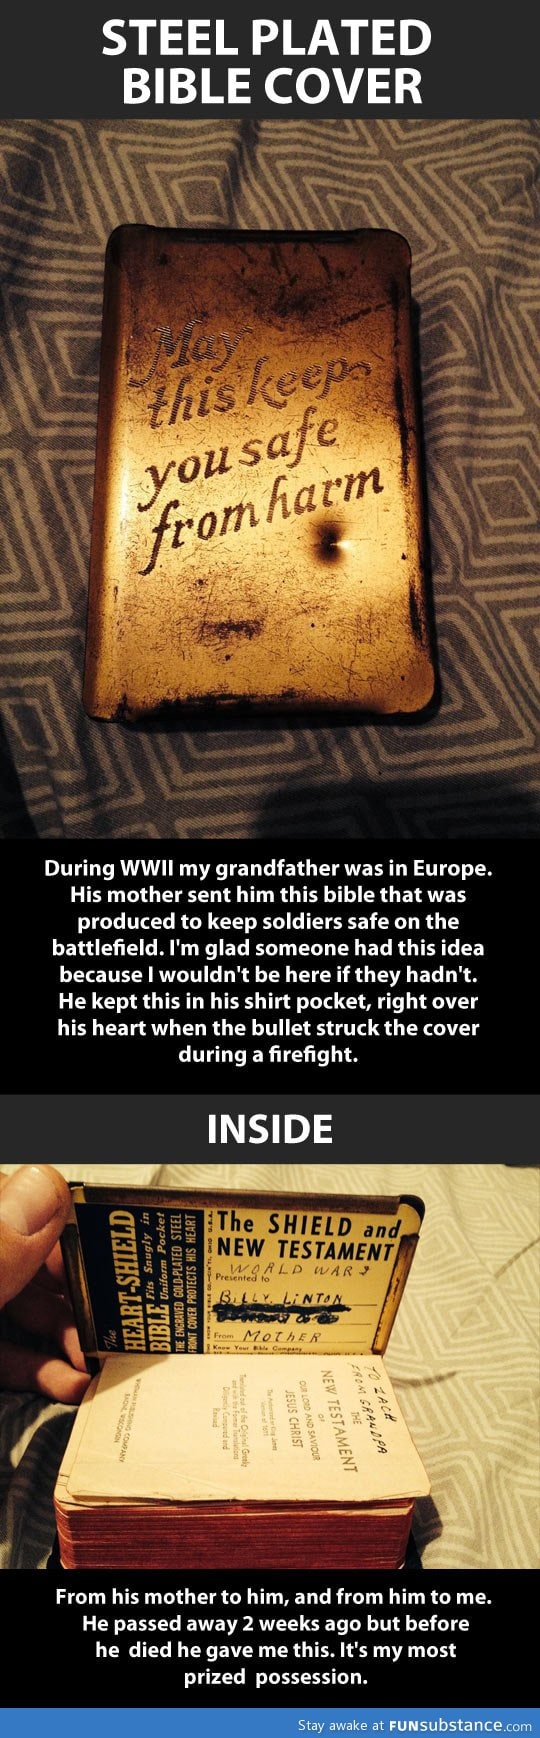 World War 2 life saver